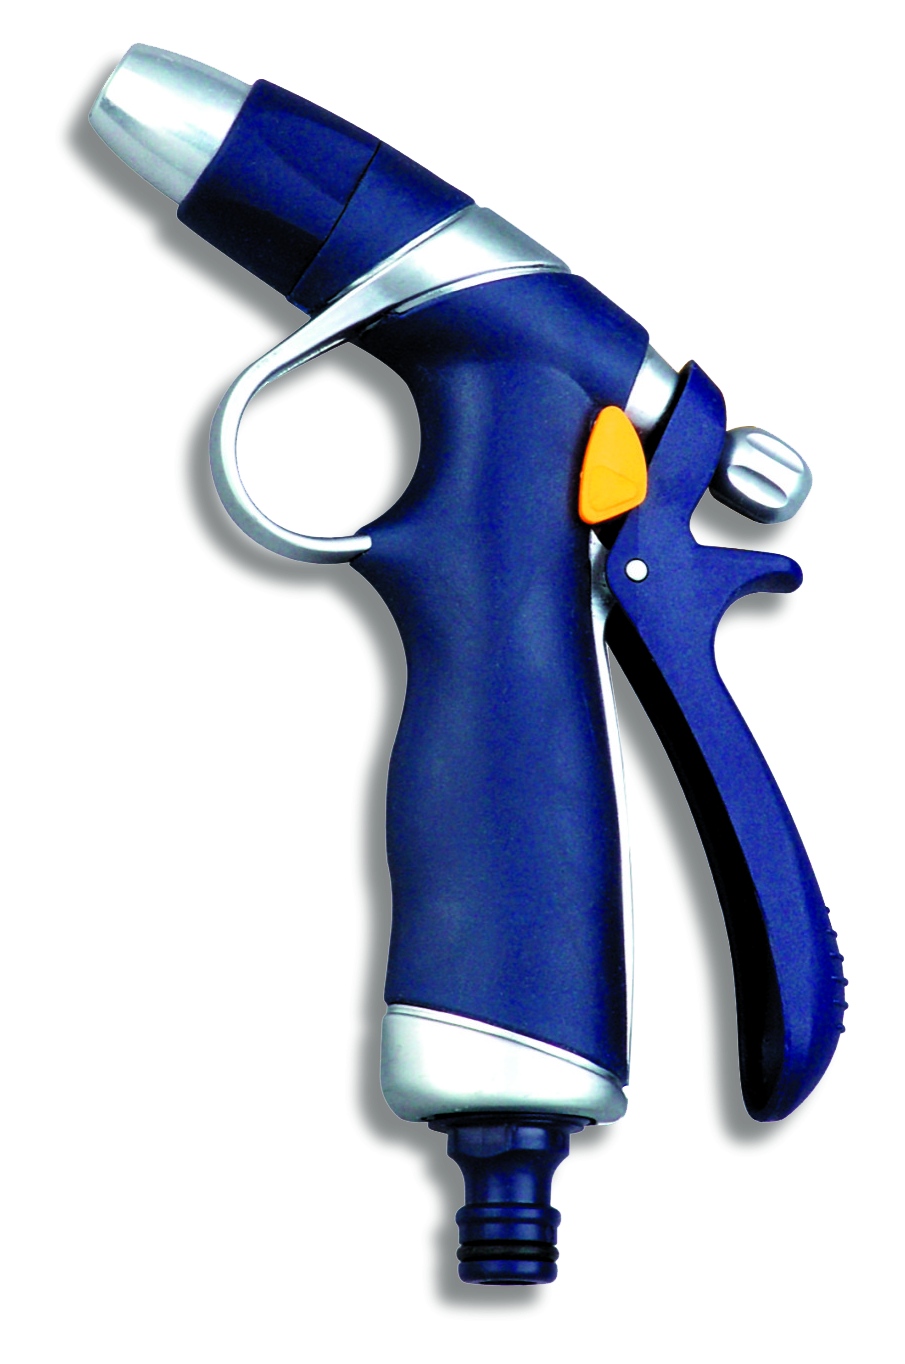 Postřikovací pistole s regulací kovová (pryžová ochrana)